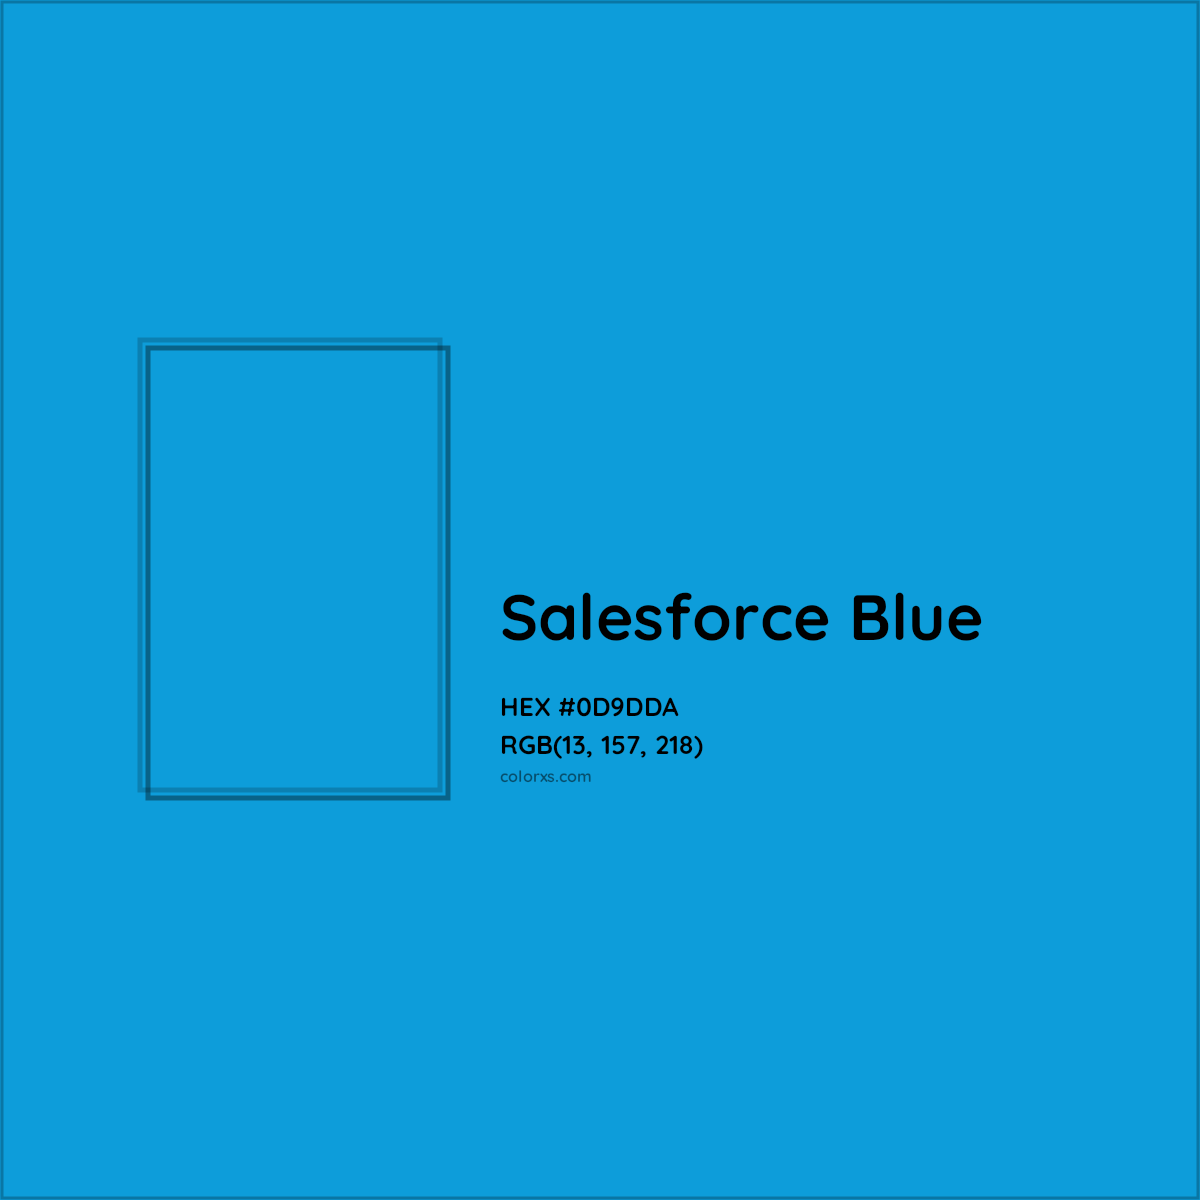 HEX #0D9DDA Salesforce Blue Other Brand - Color Code